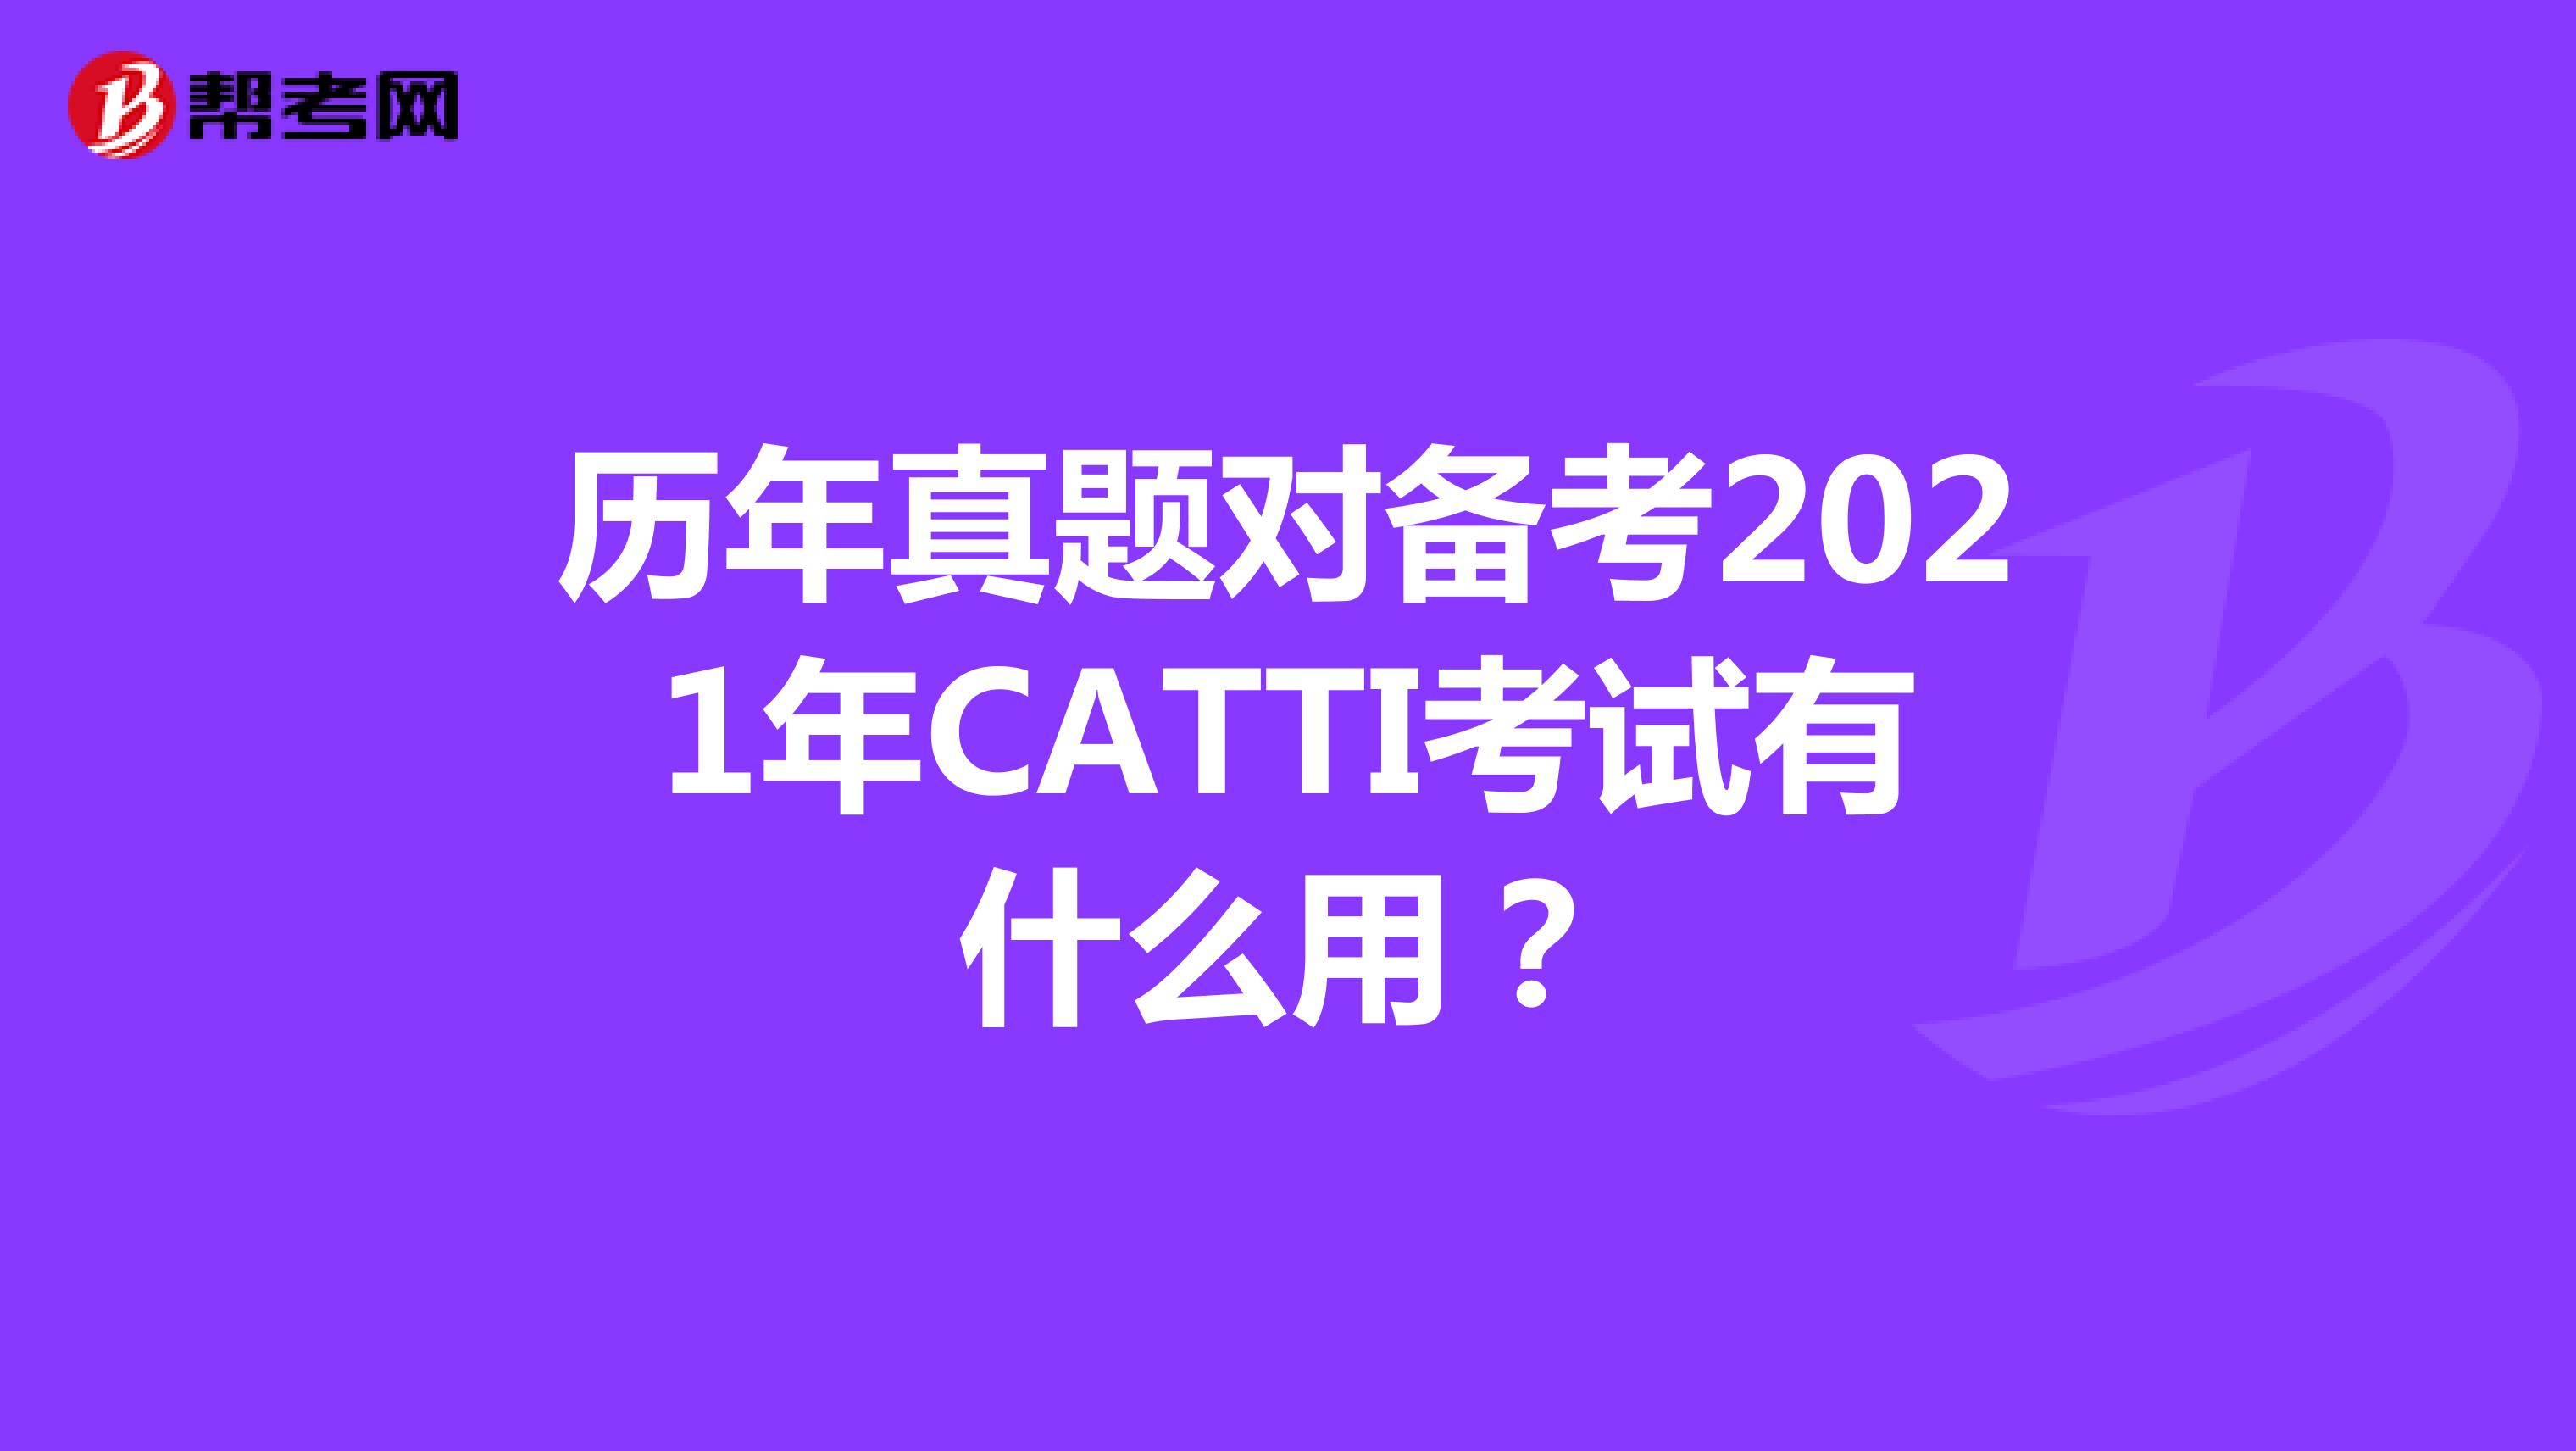 历年真题对备考2021年CATTI考试有什么用？